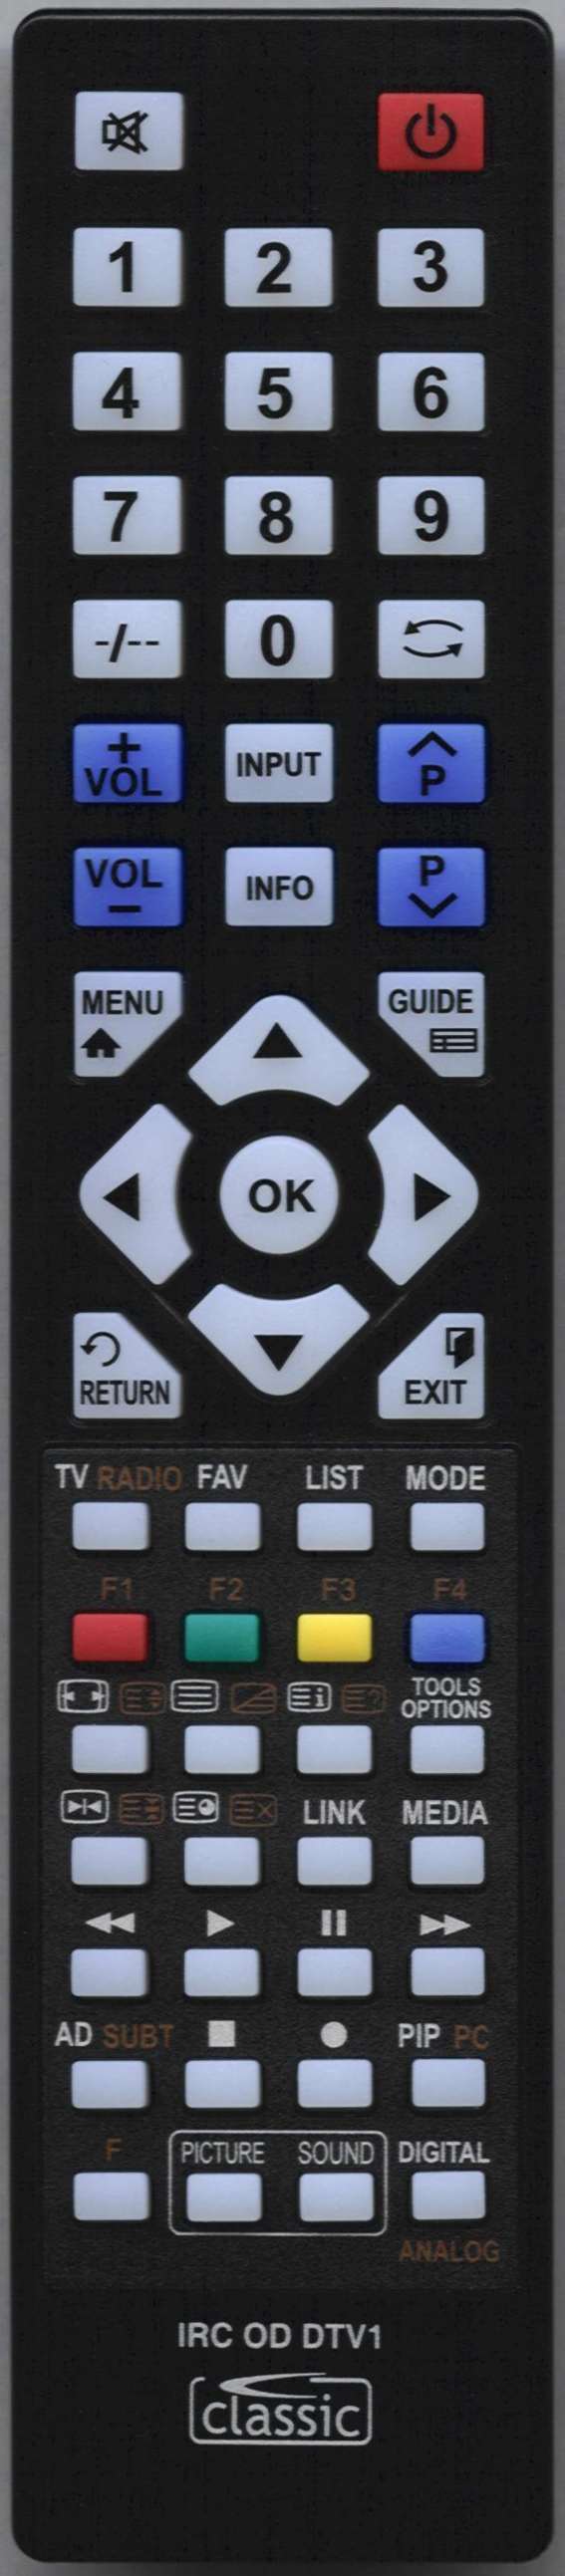 SONY KDL40W5810 Remote Control Alternative